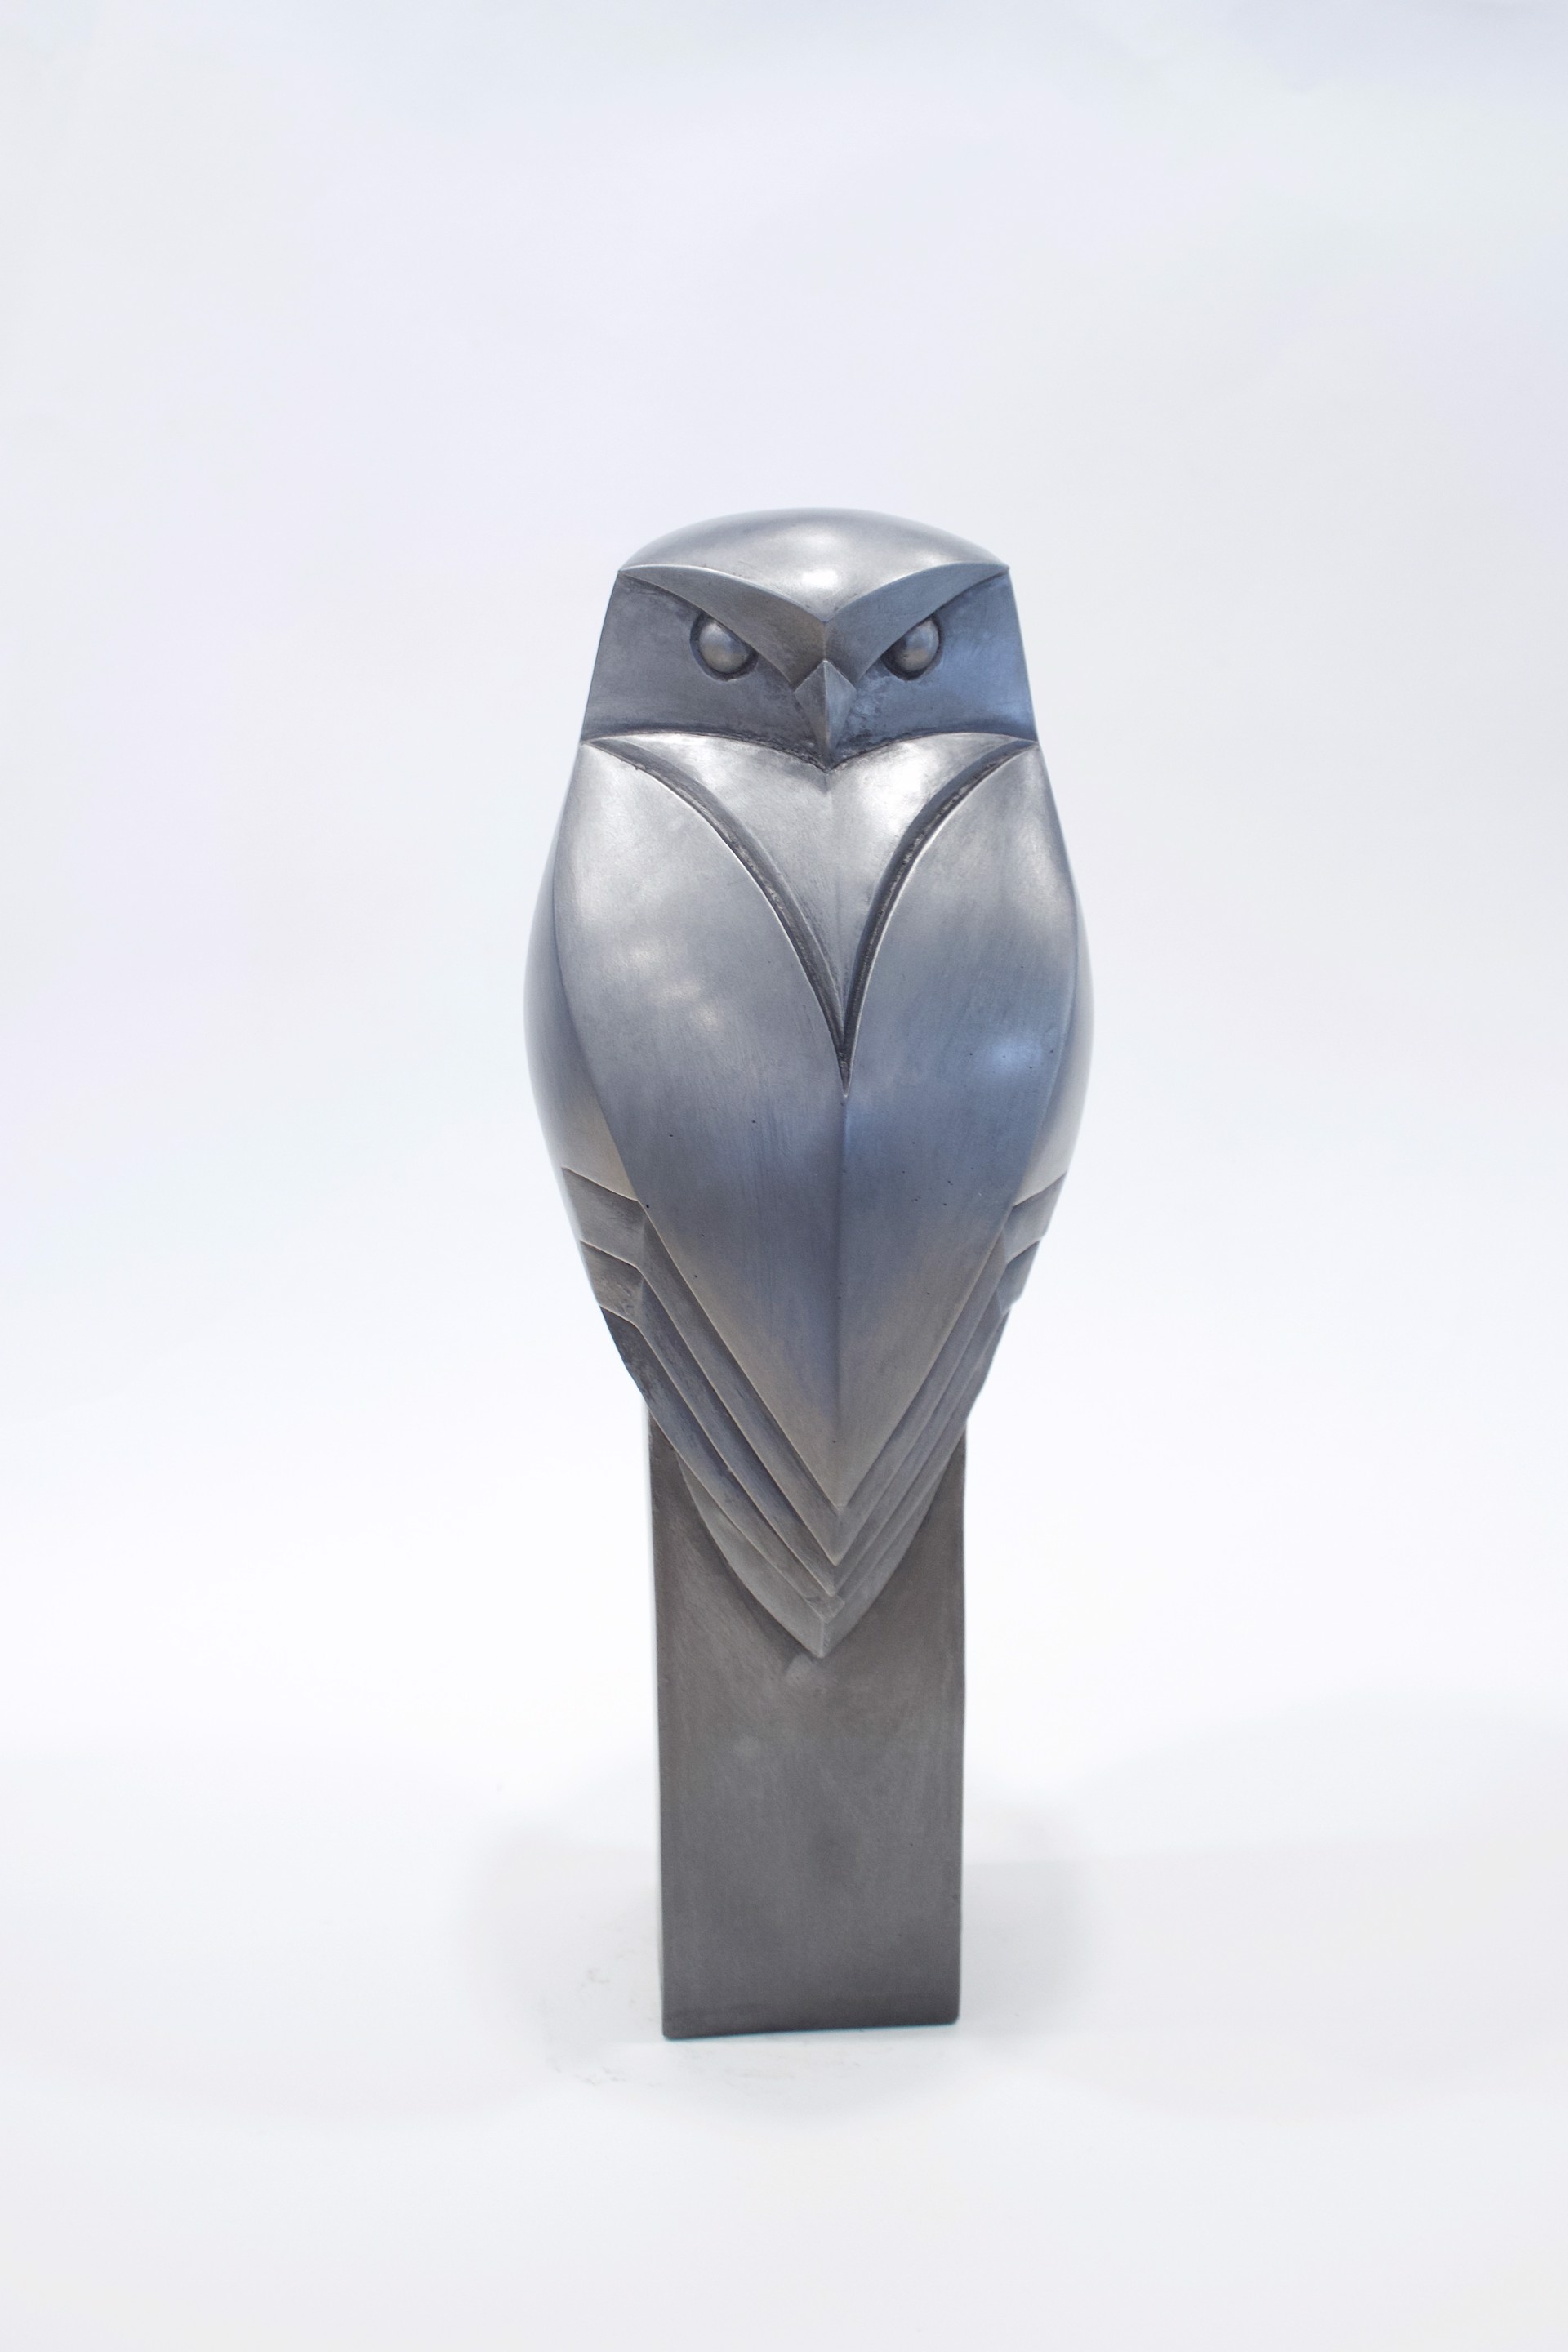 Little Owl by Paul Harvey